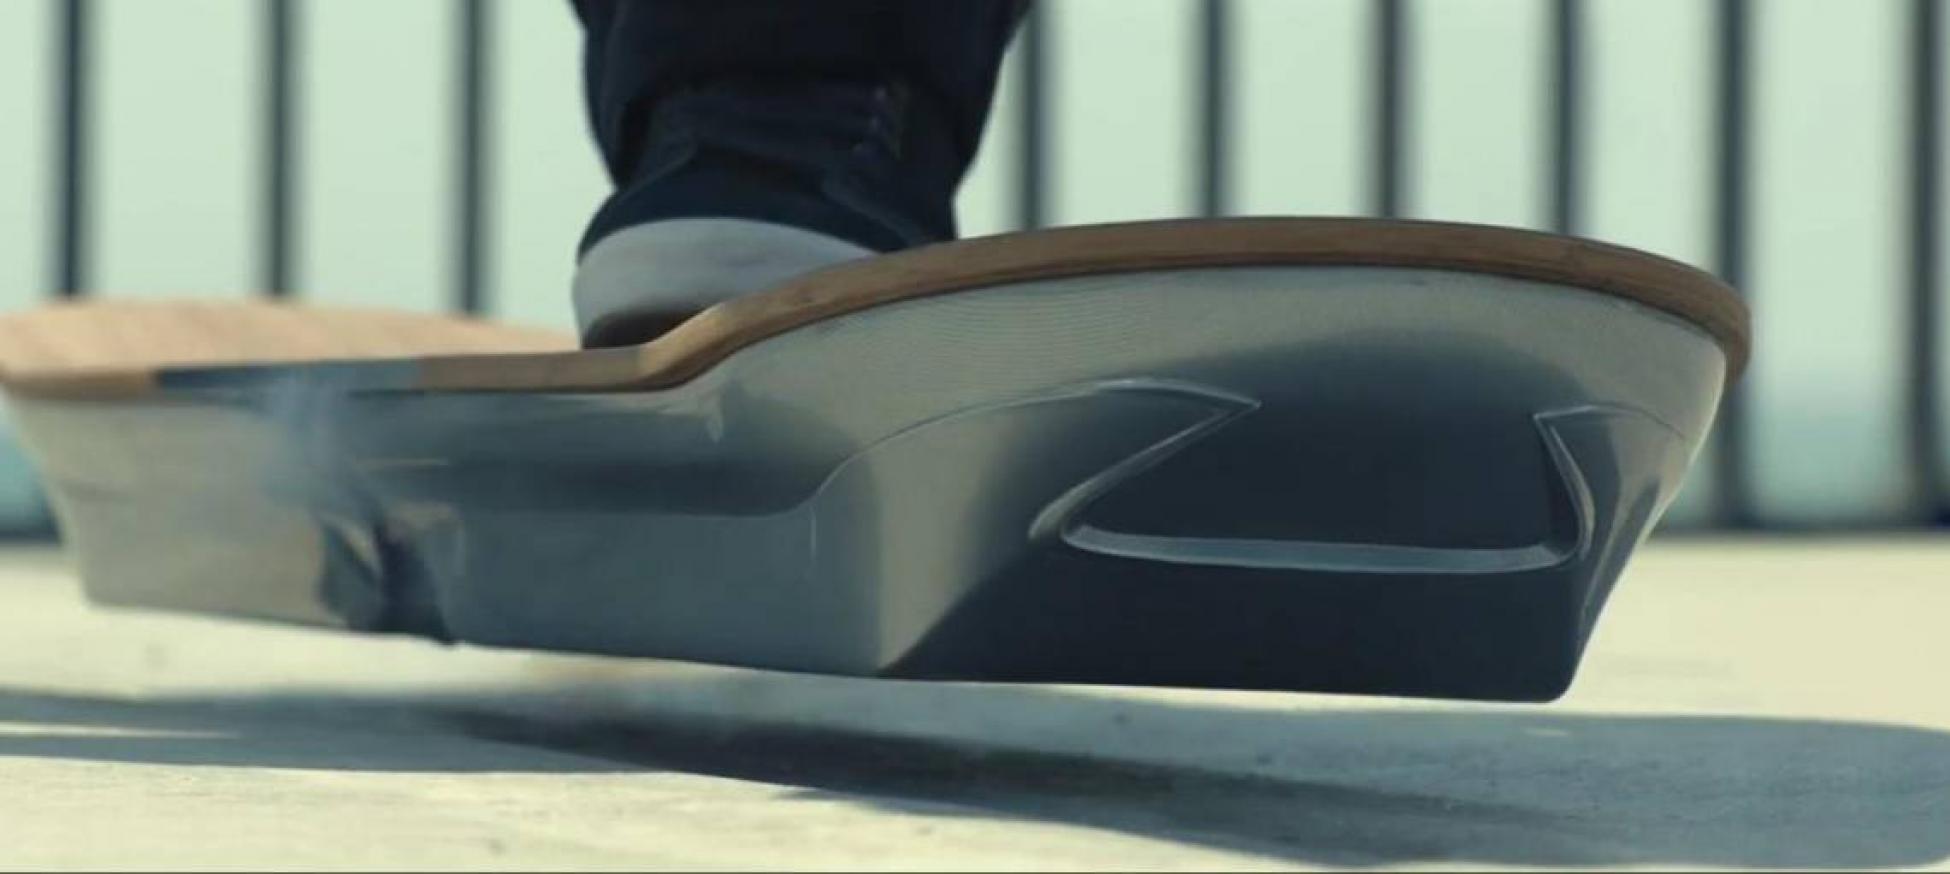 Lexus donne vie à l'Hoverboard, le skate de Retour vers le Futur !